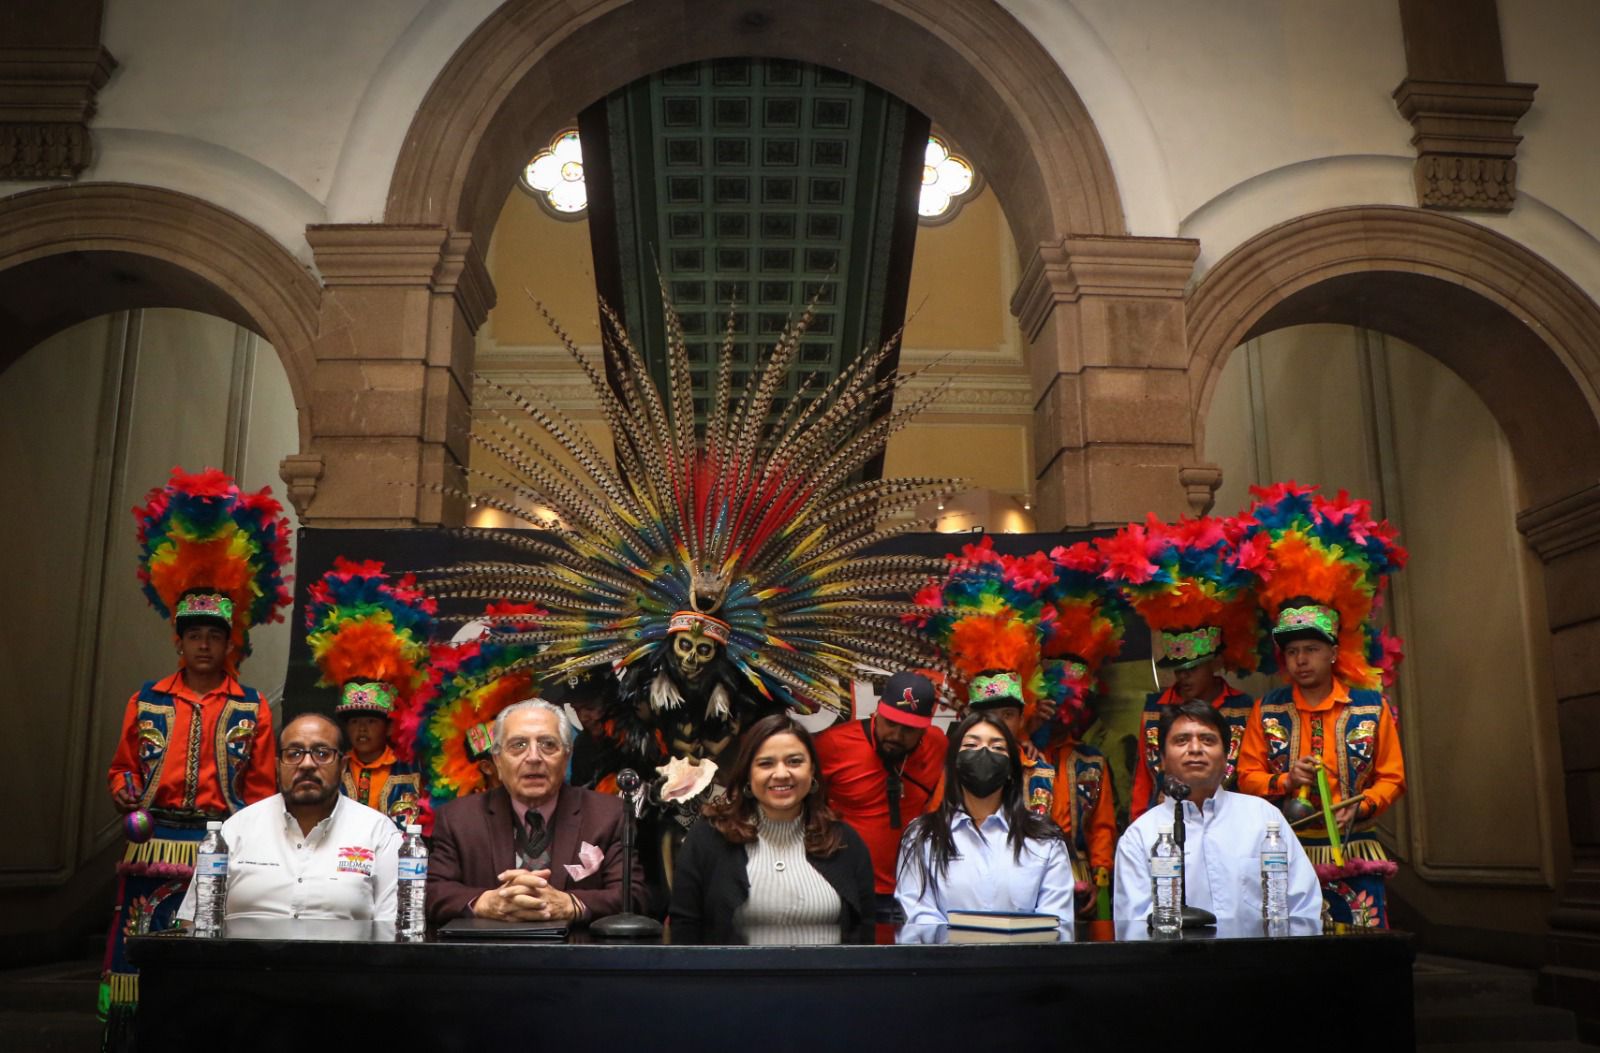  Comisión de Cultura del Ayuntamiento reitera la invitación para el 4to Festival de Danza Tradicional “Saucito Primer Viento”